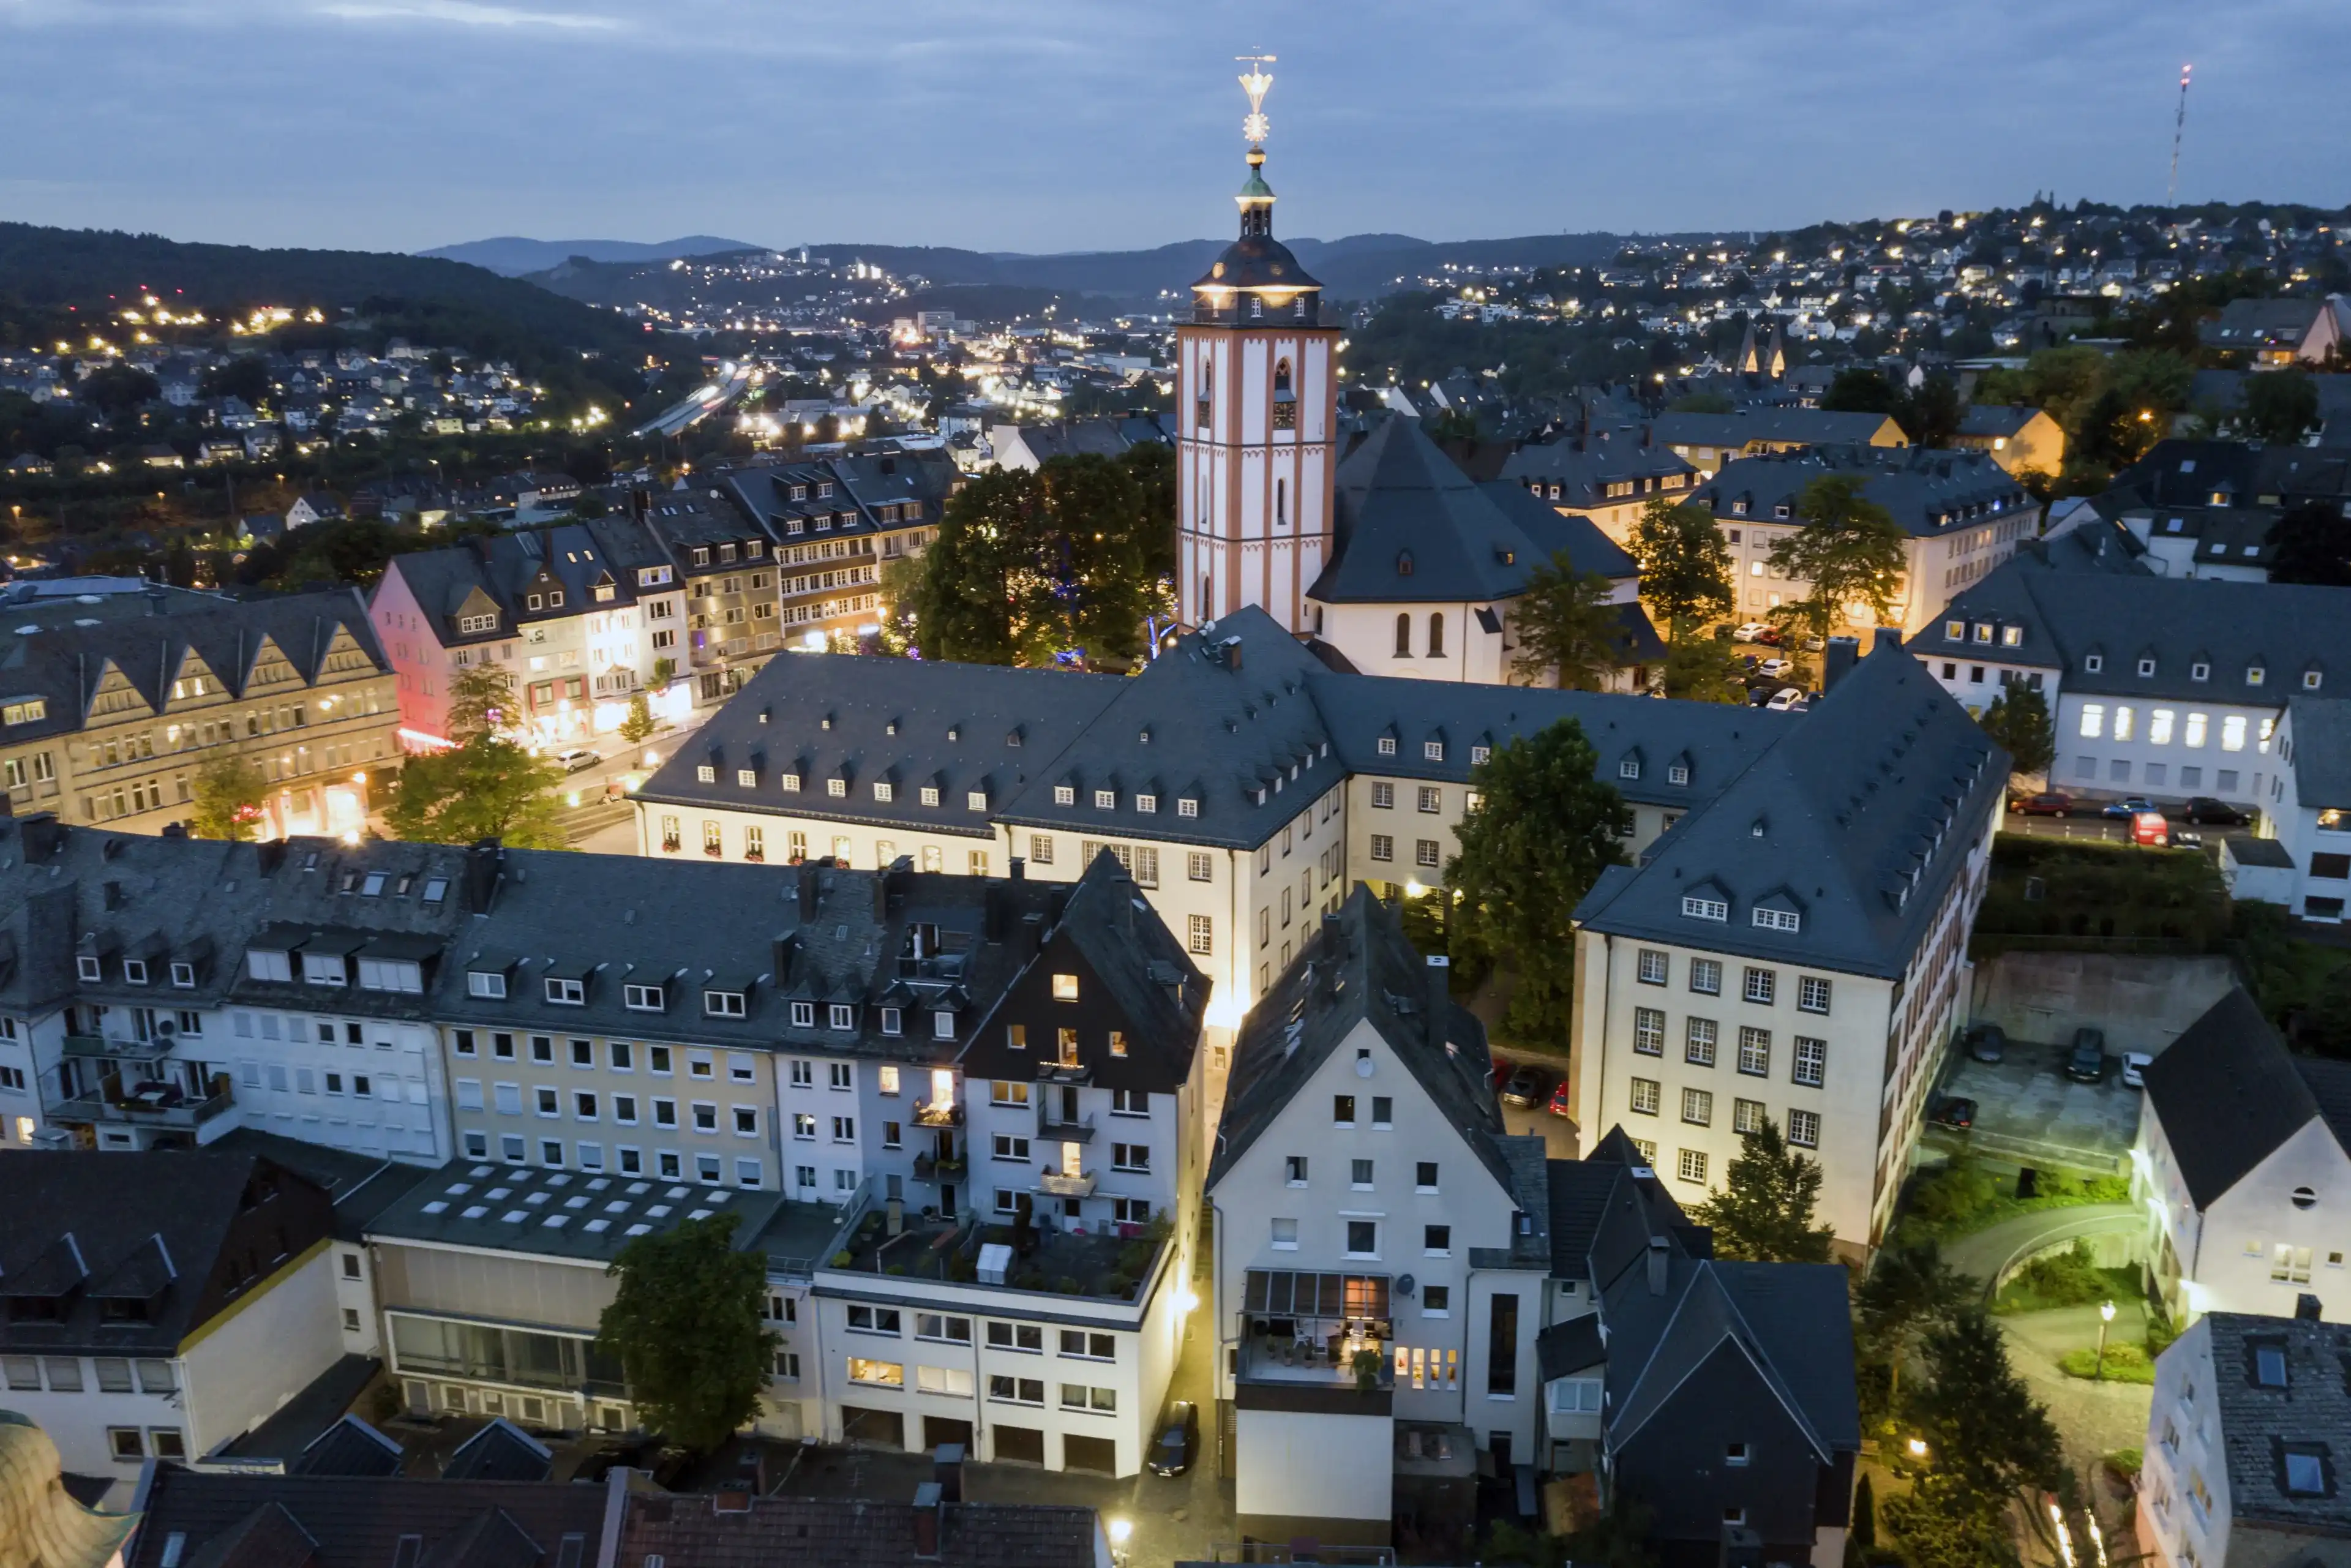  Best Siegen hotels. Cheap hotels in Siegen, Germany